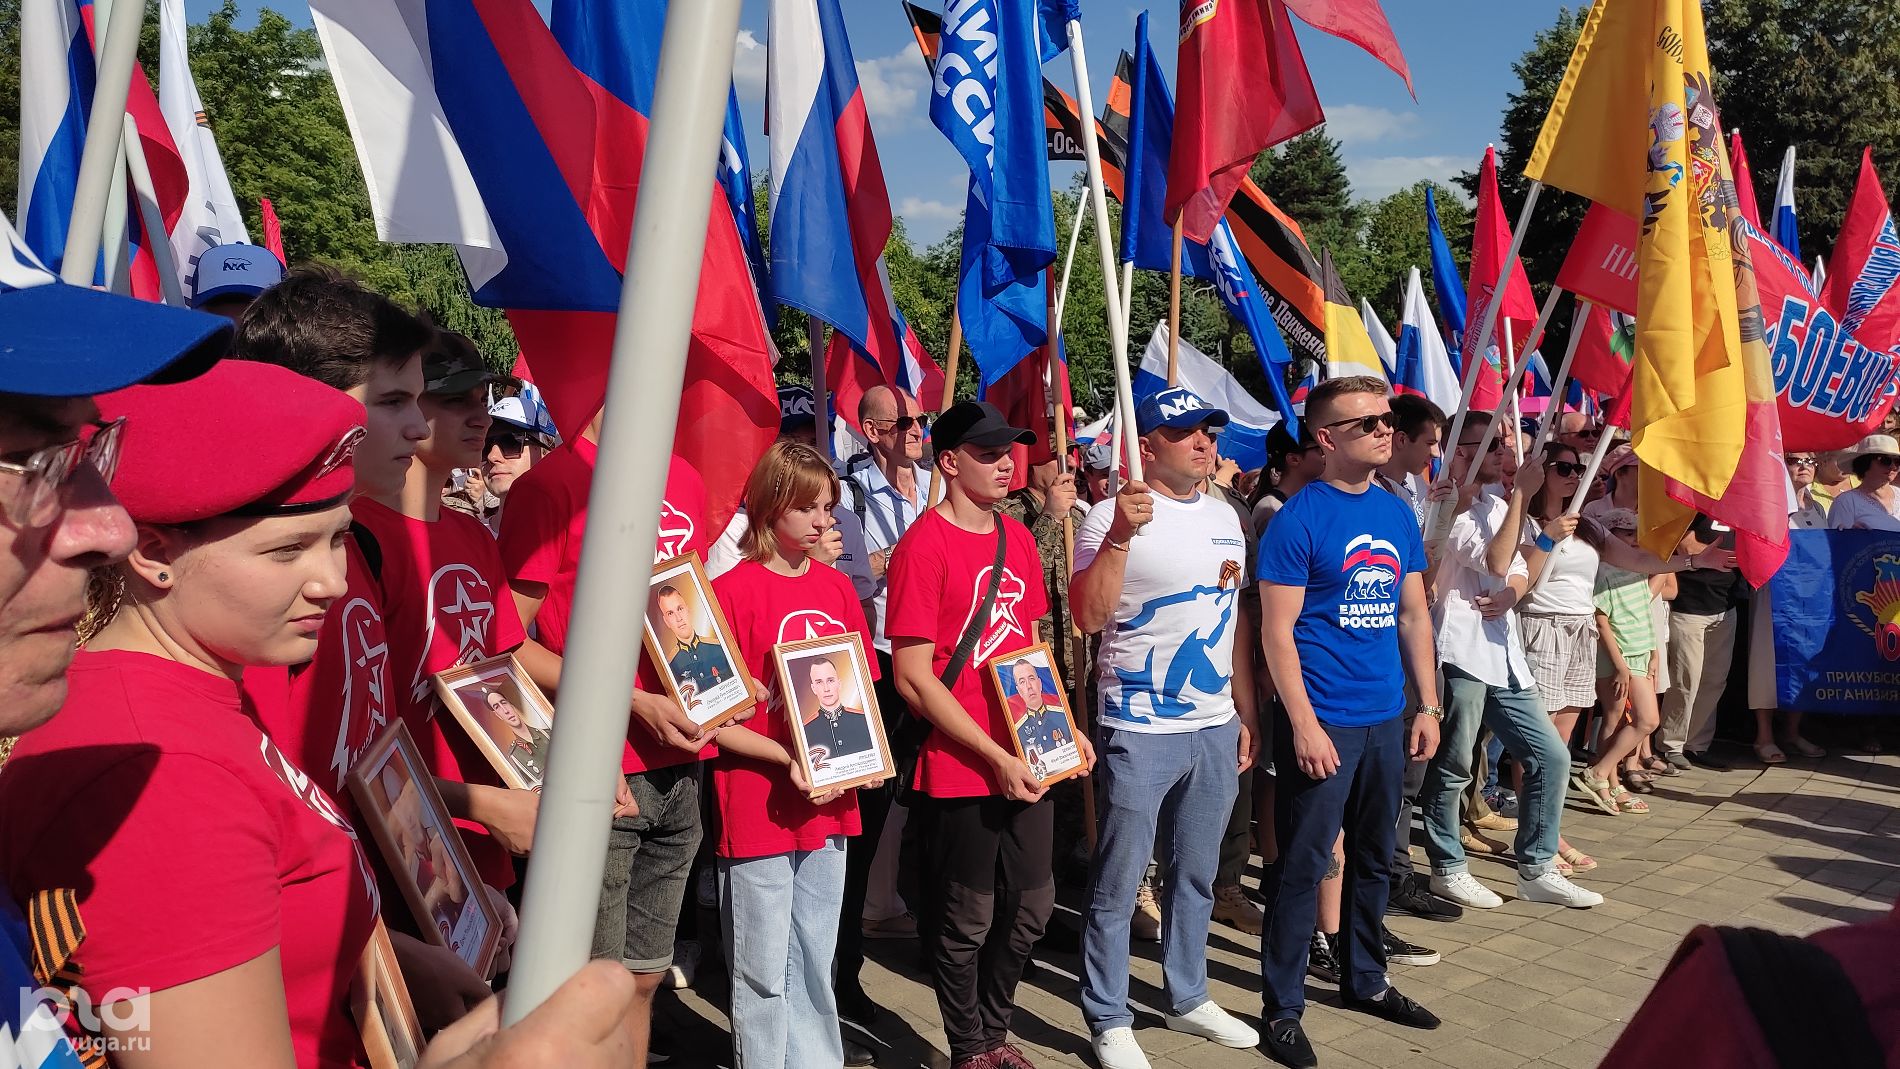 Митинг в поддержку президента и вооруженных сил РФ в Краснодаре © Фото Иолины Грибковой, Юга.ру